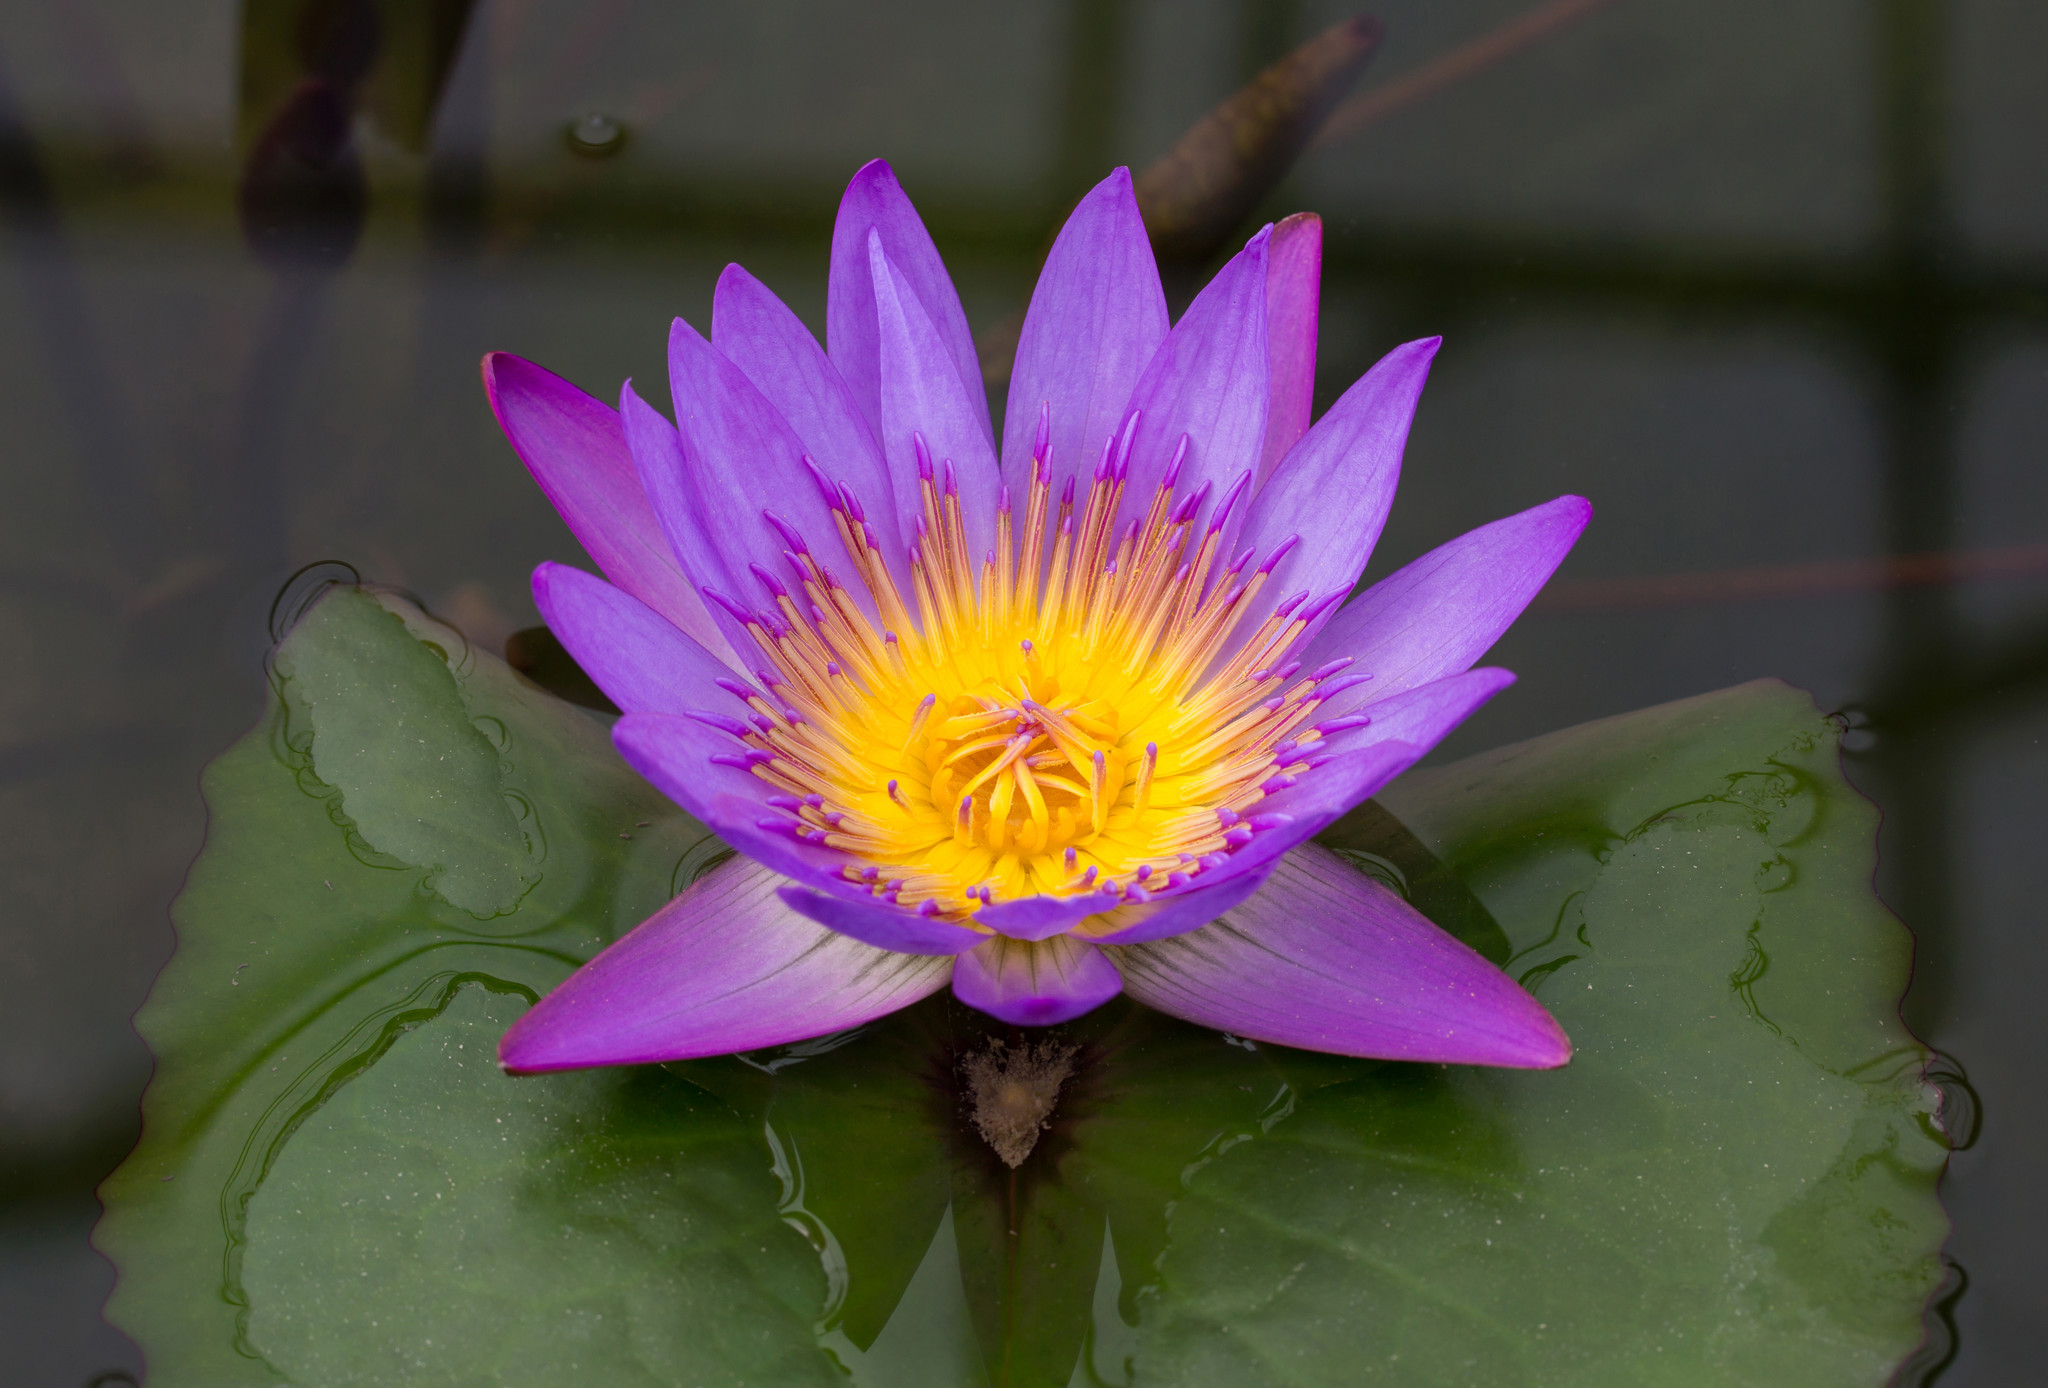 Bloedbad Haarvaten Normaal Blauwe Lotus: Alles wat je wilde weten - Drpaddo.com